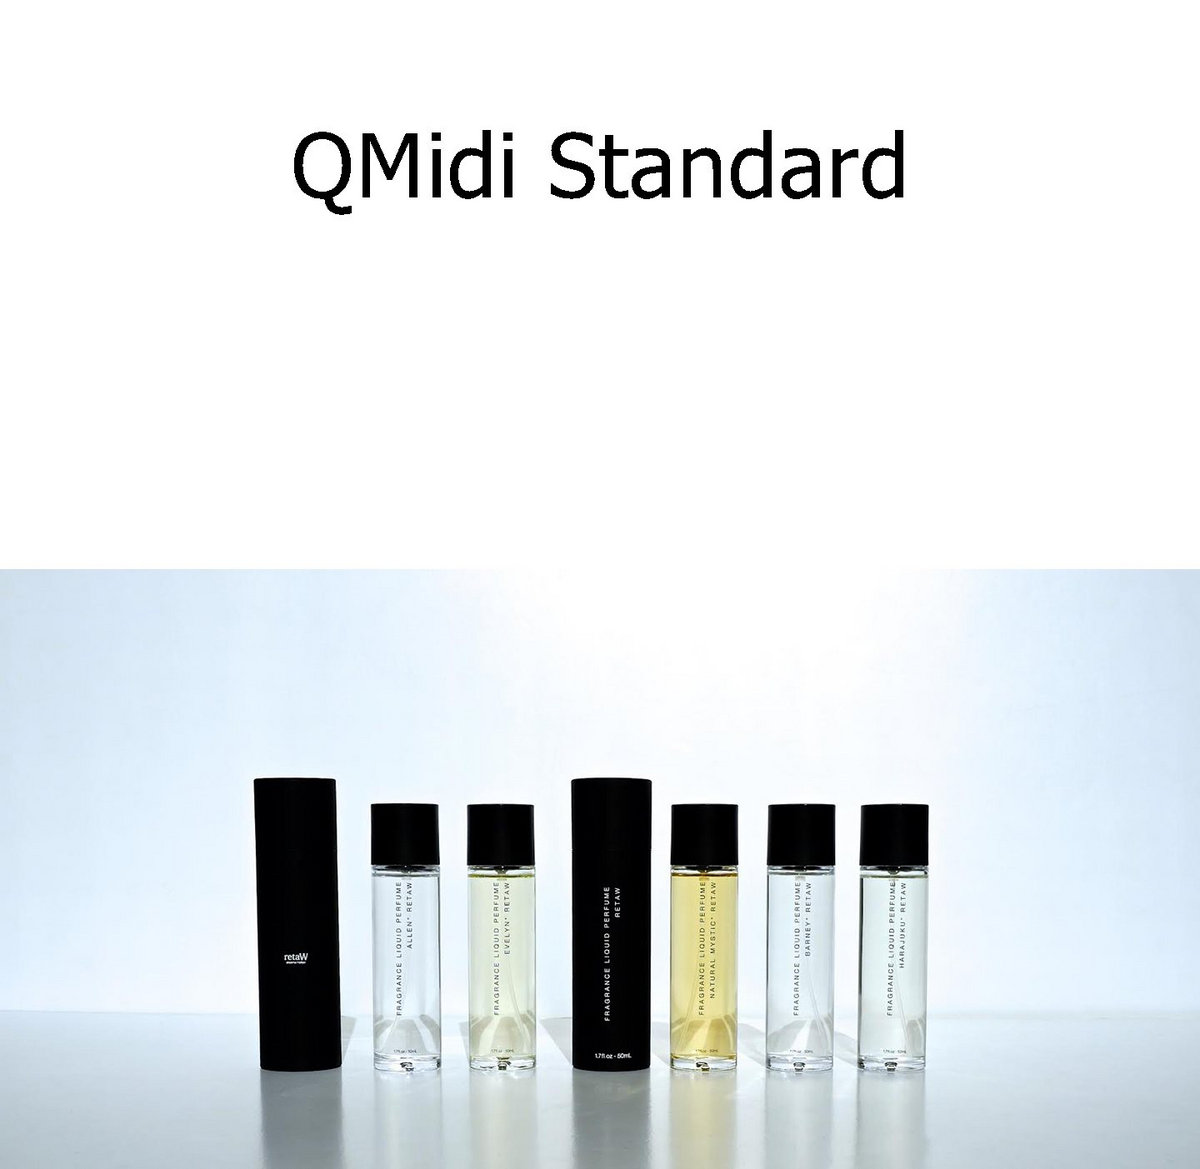 Qmidi standard 2.7.0.1 download free download